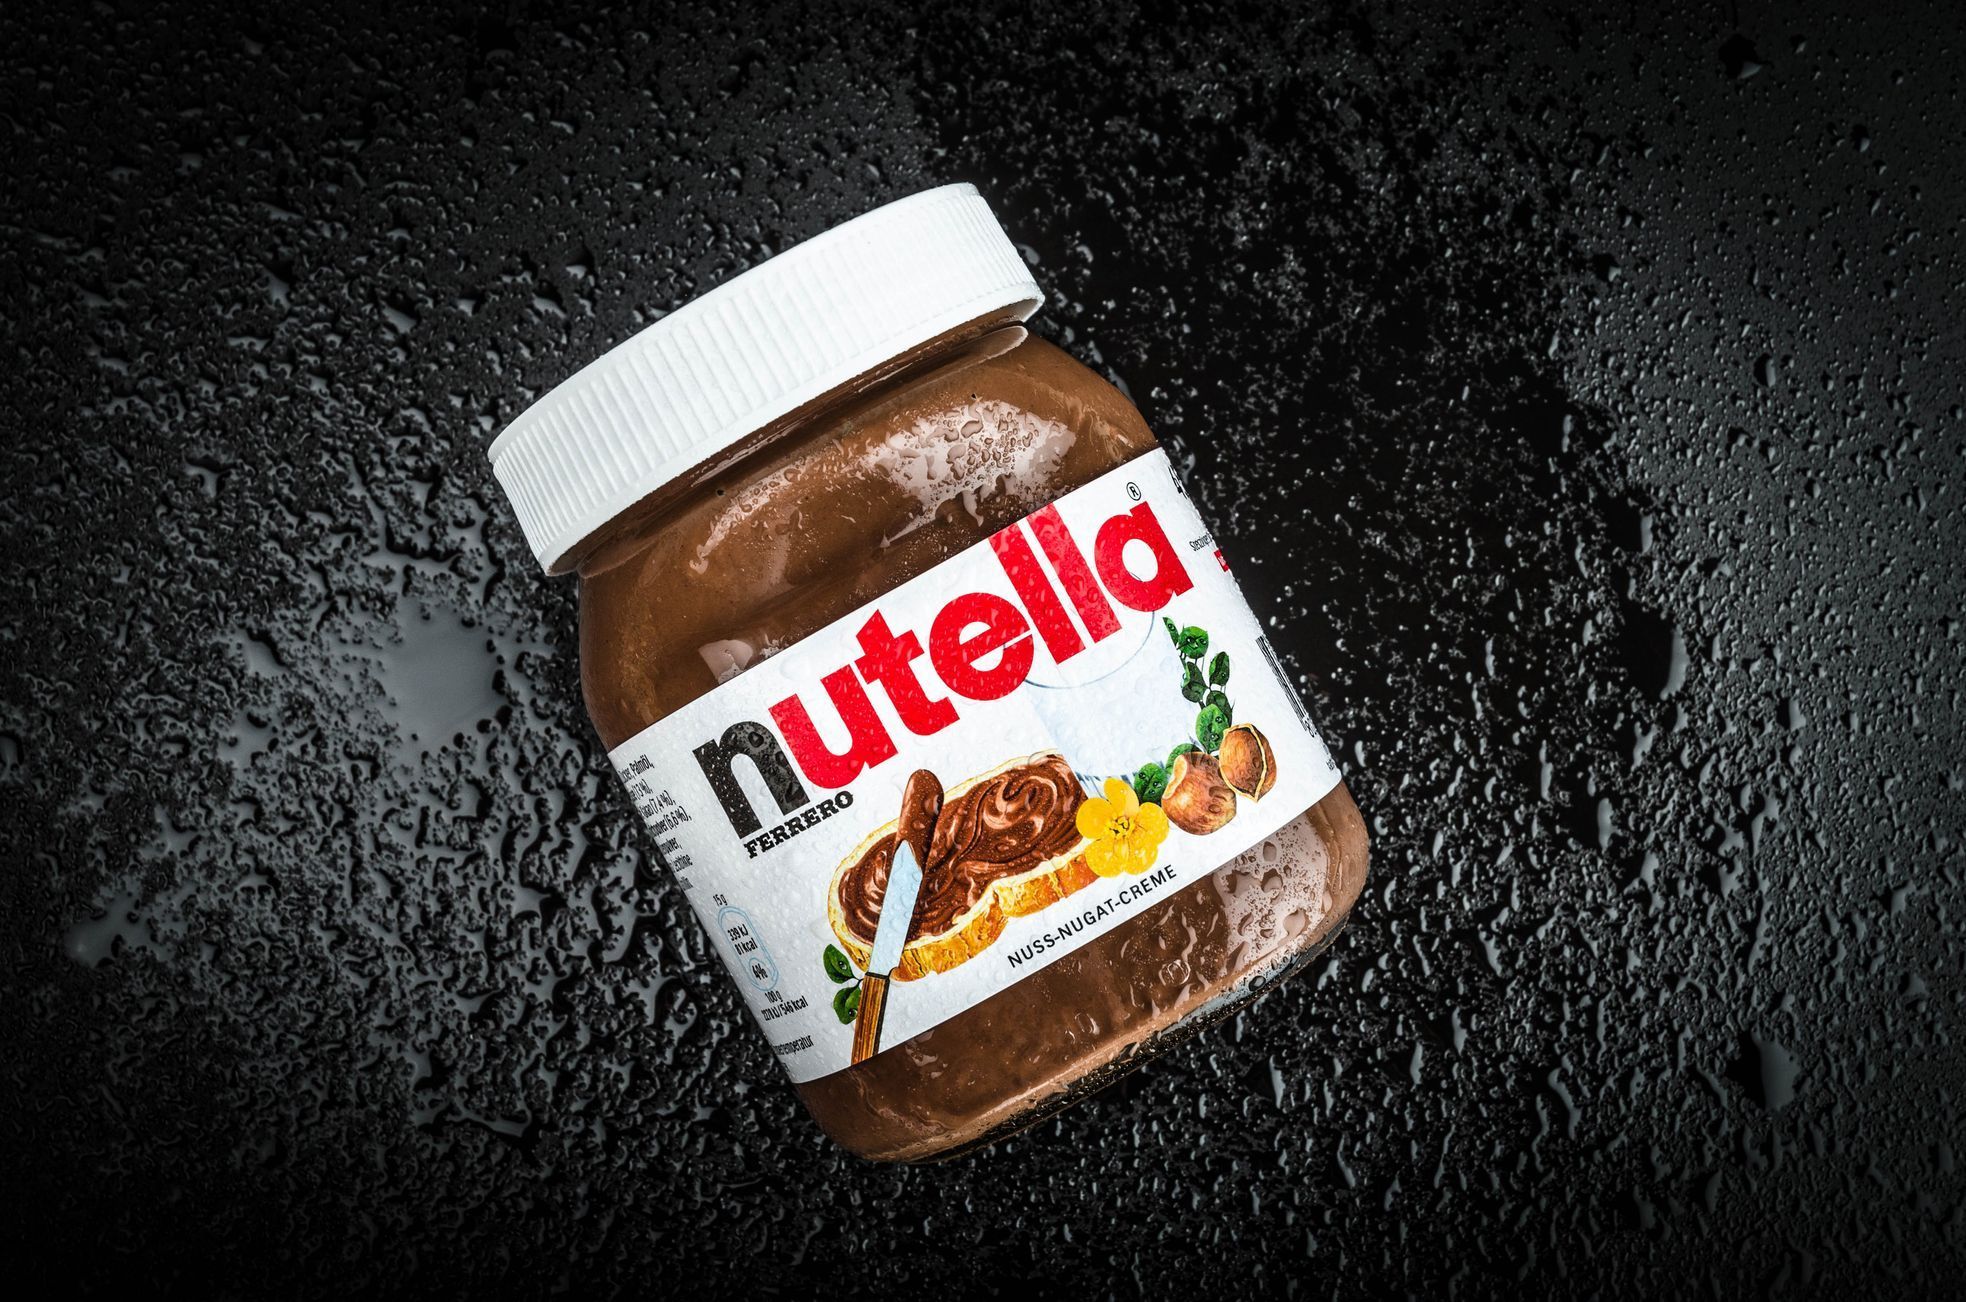 Ilustrační fotografie, Nutella, 2017